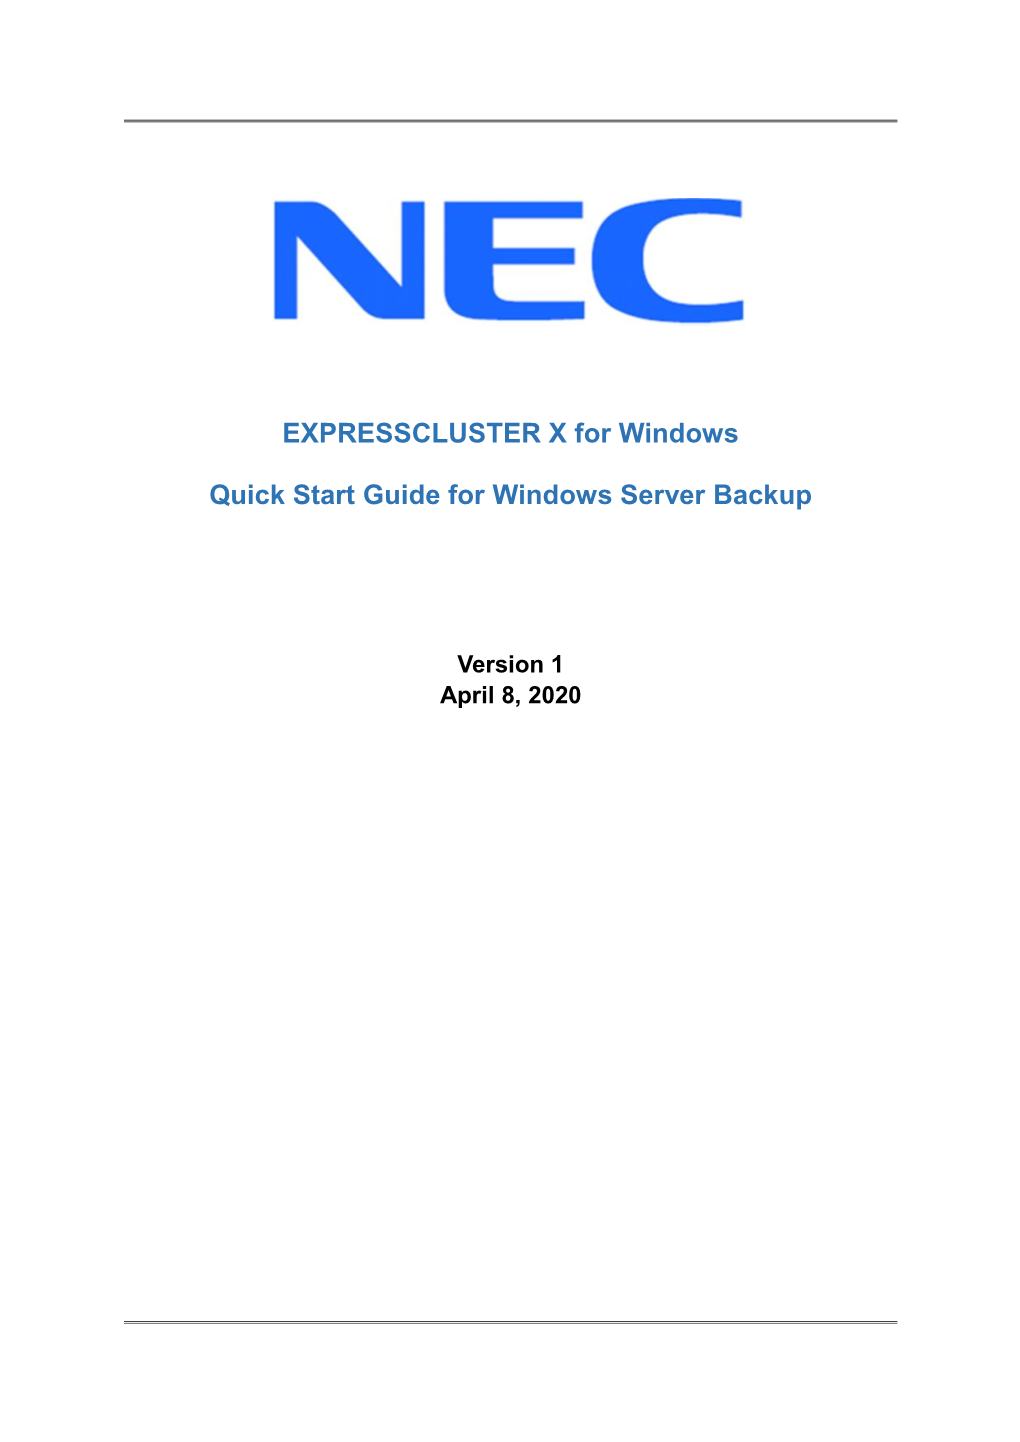 EXPRESSCLUSTER X Quick Start Guide for Windows Server Backup